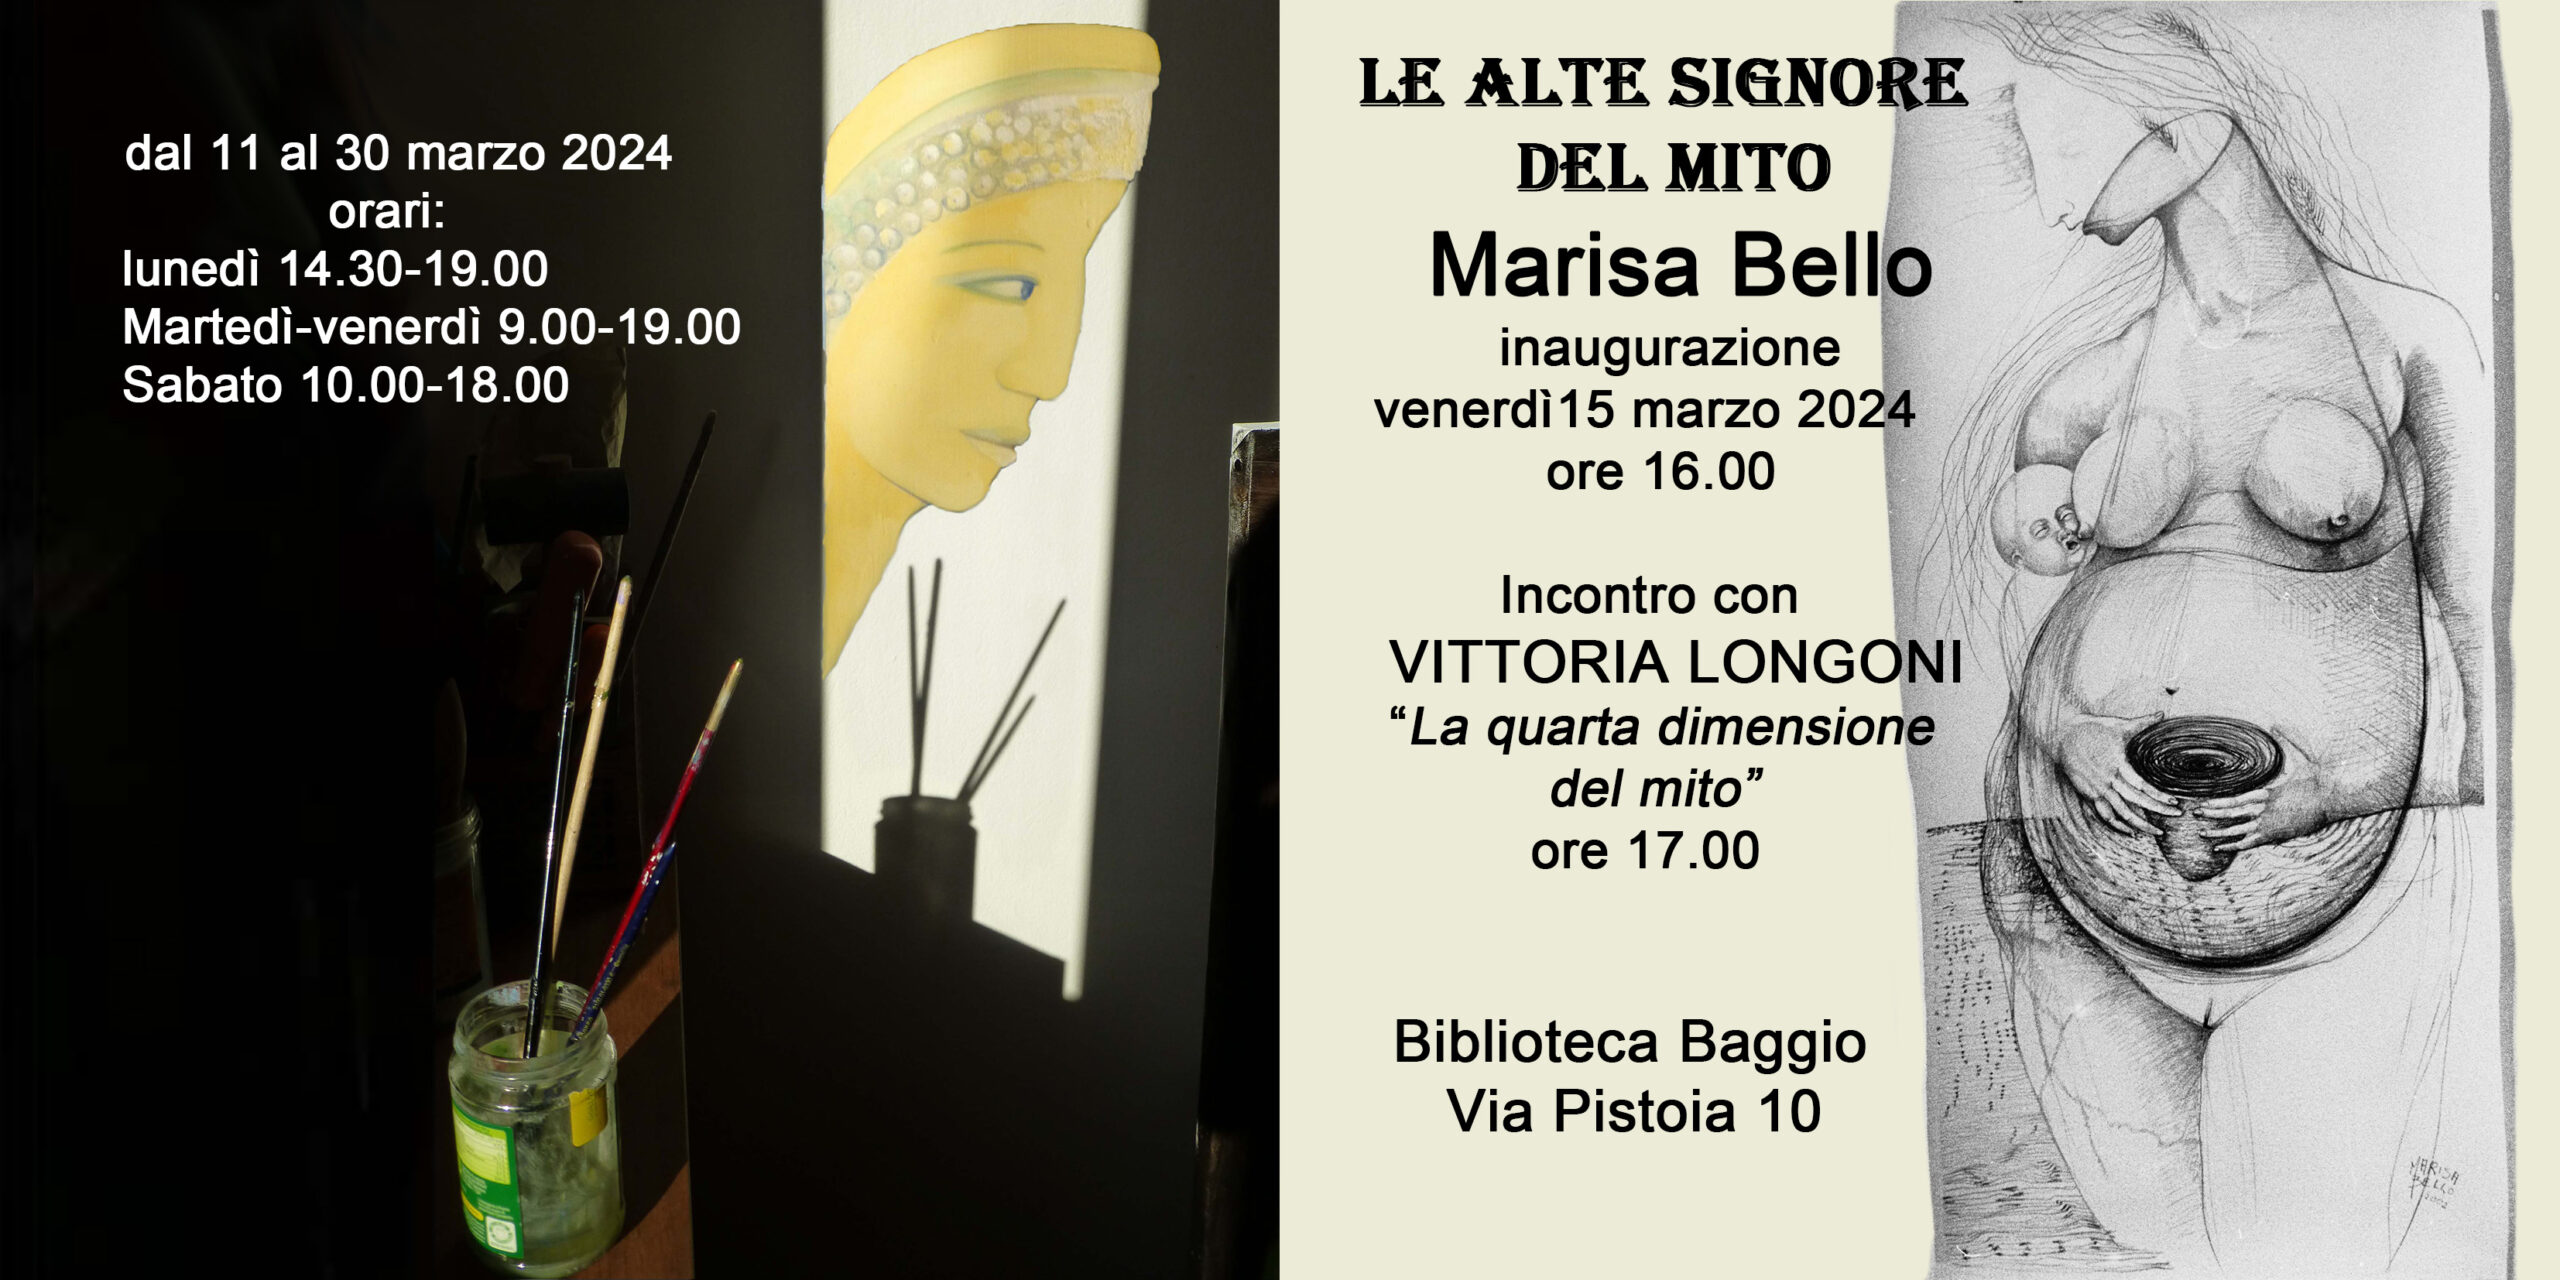 Inaugurazione della mostra di Marisa Bello "Le alte signore del mito" e conferenza di Vittoria Longoni "La quarta dimensione del mito" @ Biblioteca Baggio